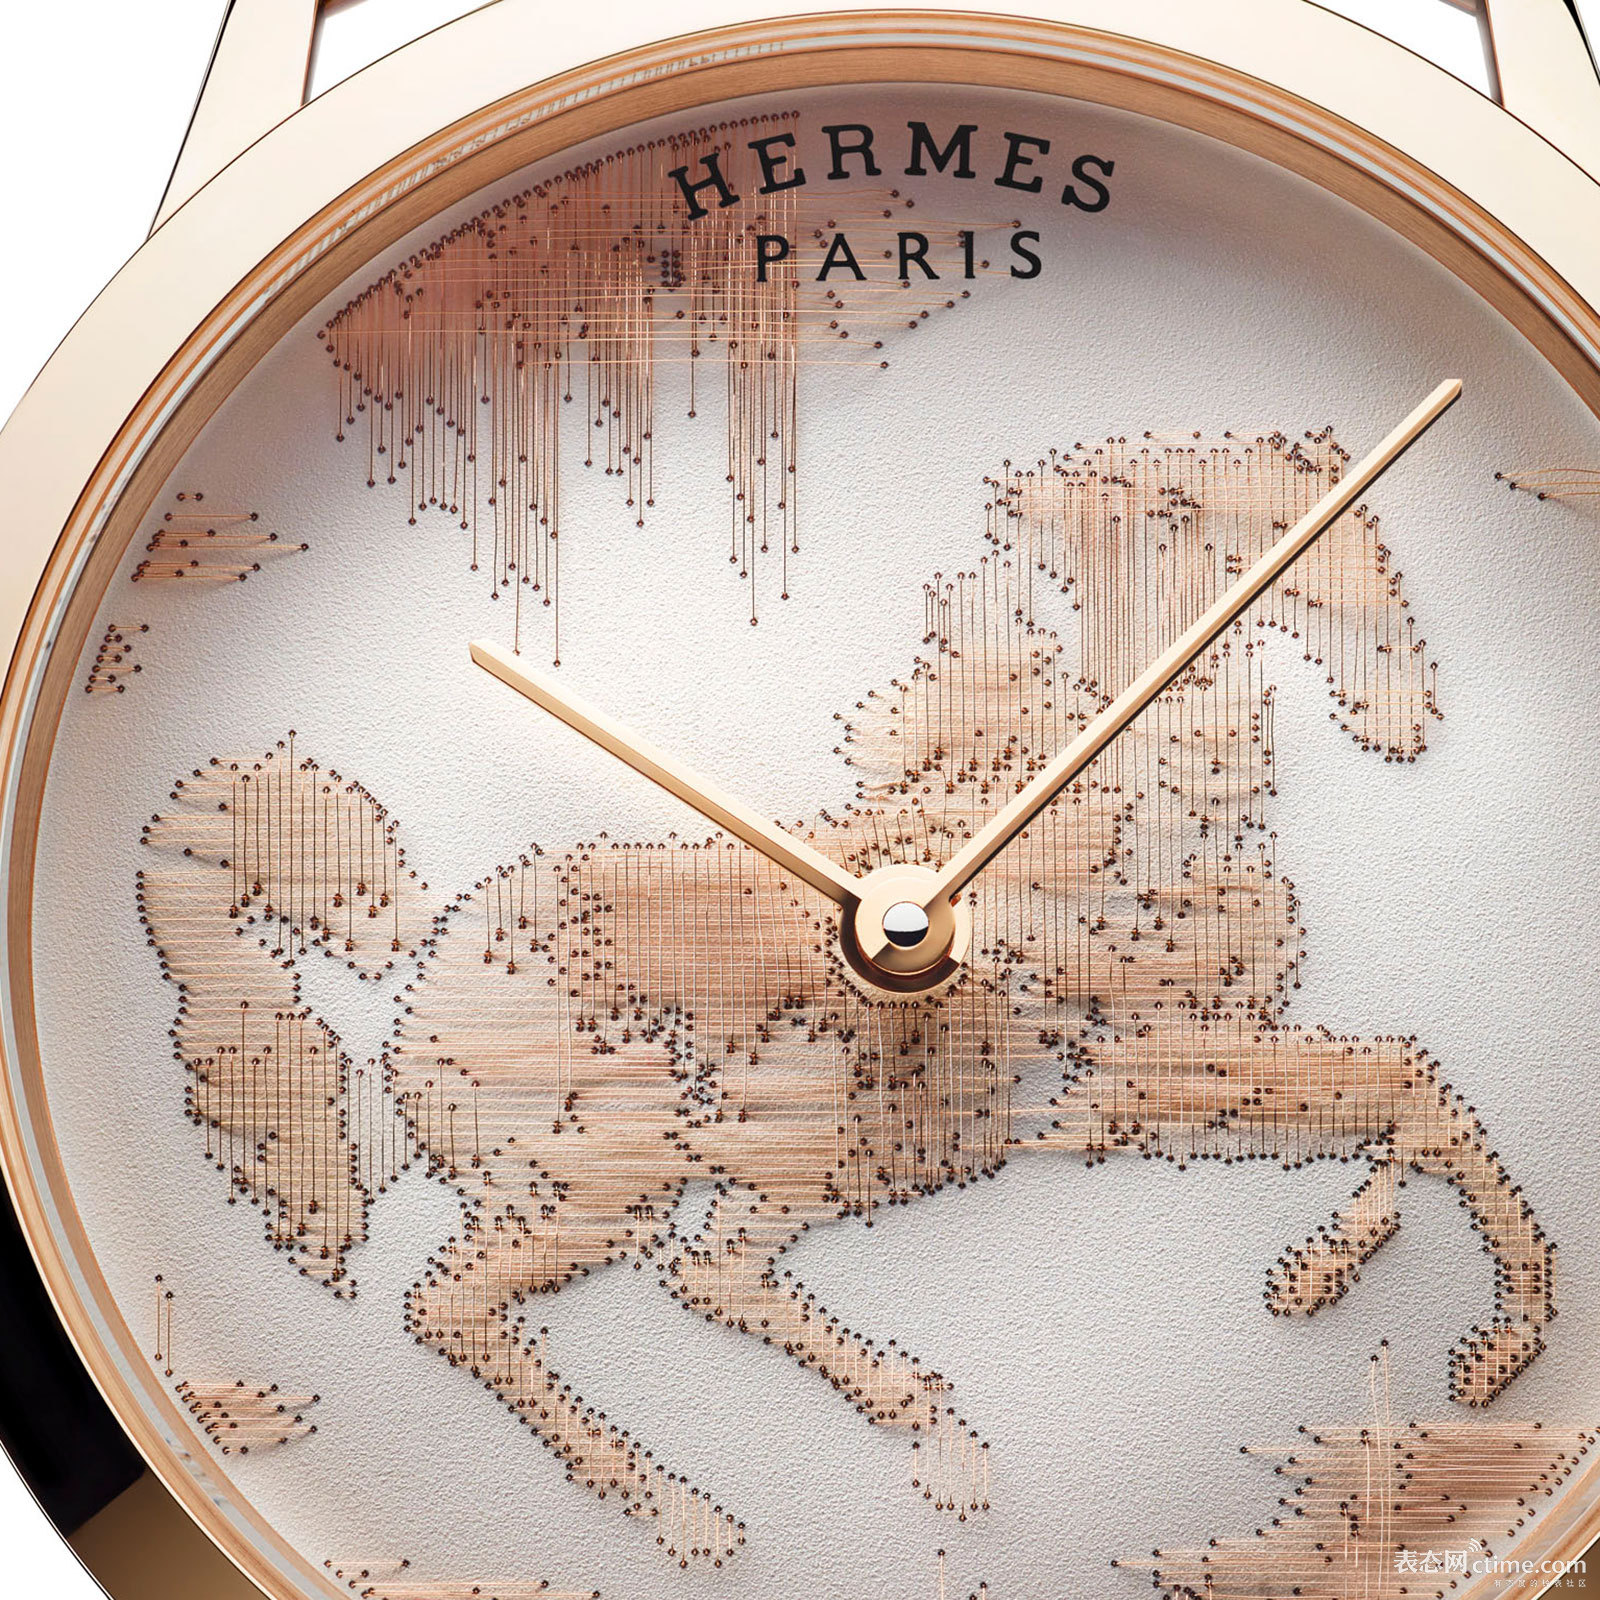 Hermes-Slim-Cheval-Ikat-watch-3.jpg